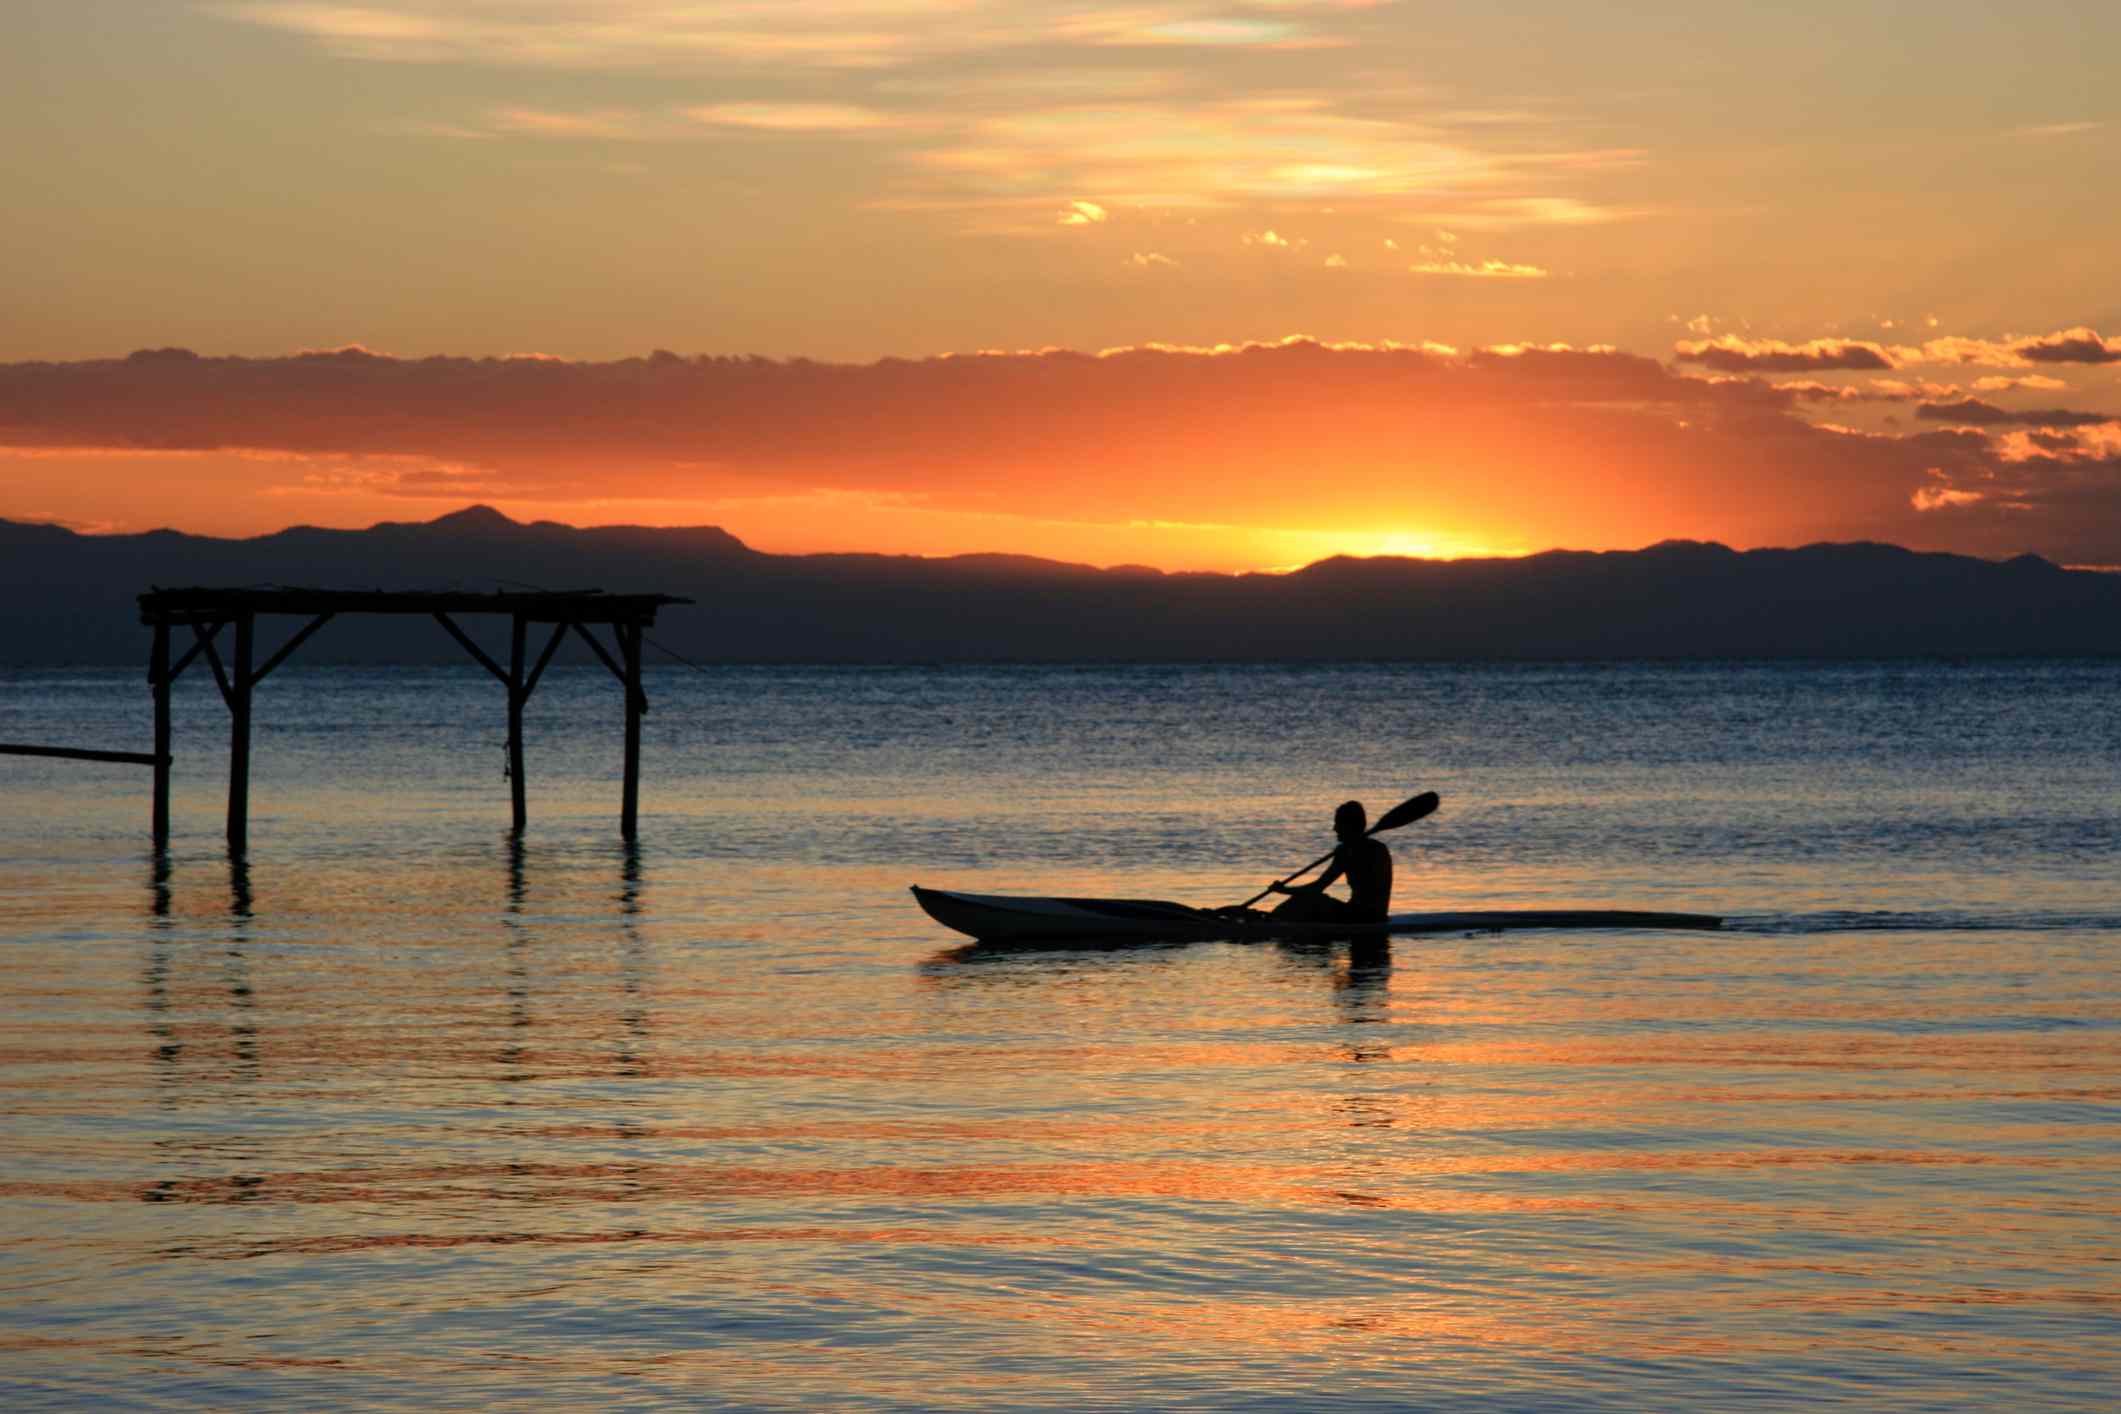 Un solo kayakista en el lago Malawi con una vívida puesta de sol naranja y amarilla en la distancia